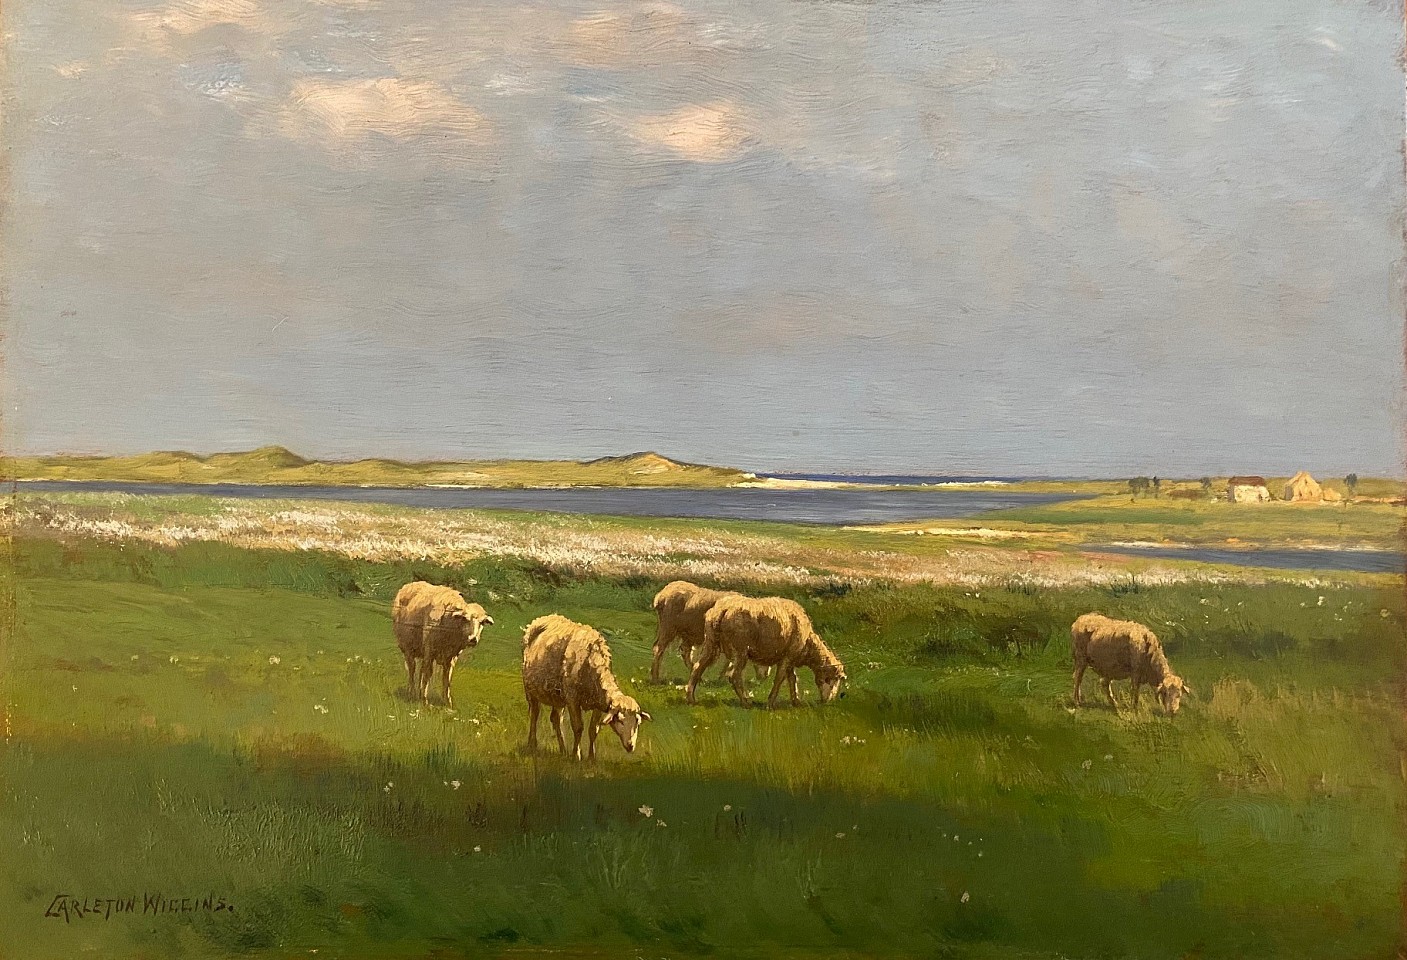 J. Carleton Wiggins, A Spring Landscape
oil on cradled panel, 12 1/2"" x 18""
JCA 6501
$5,500